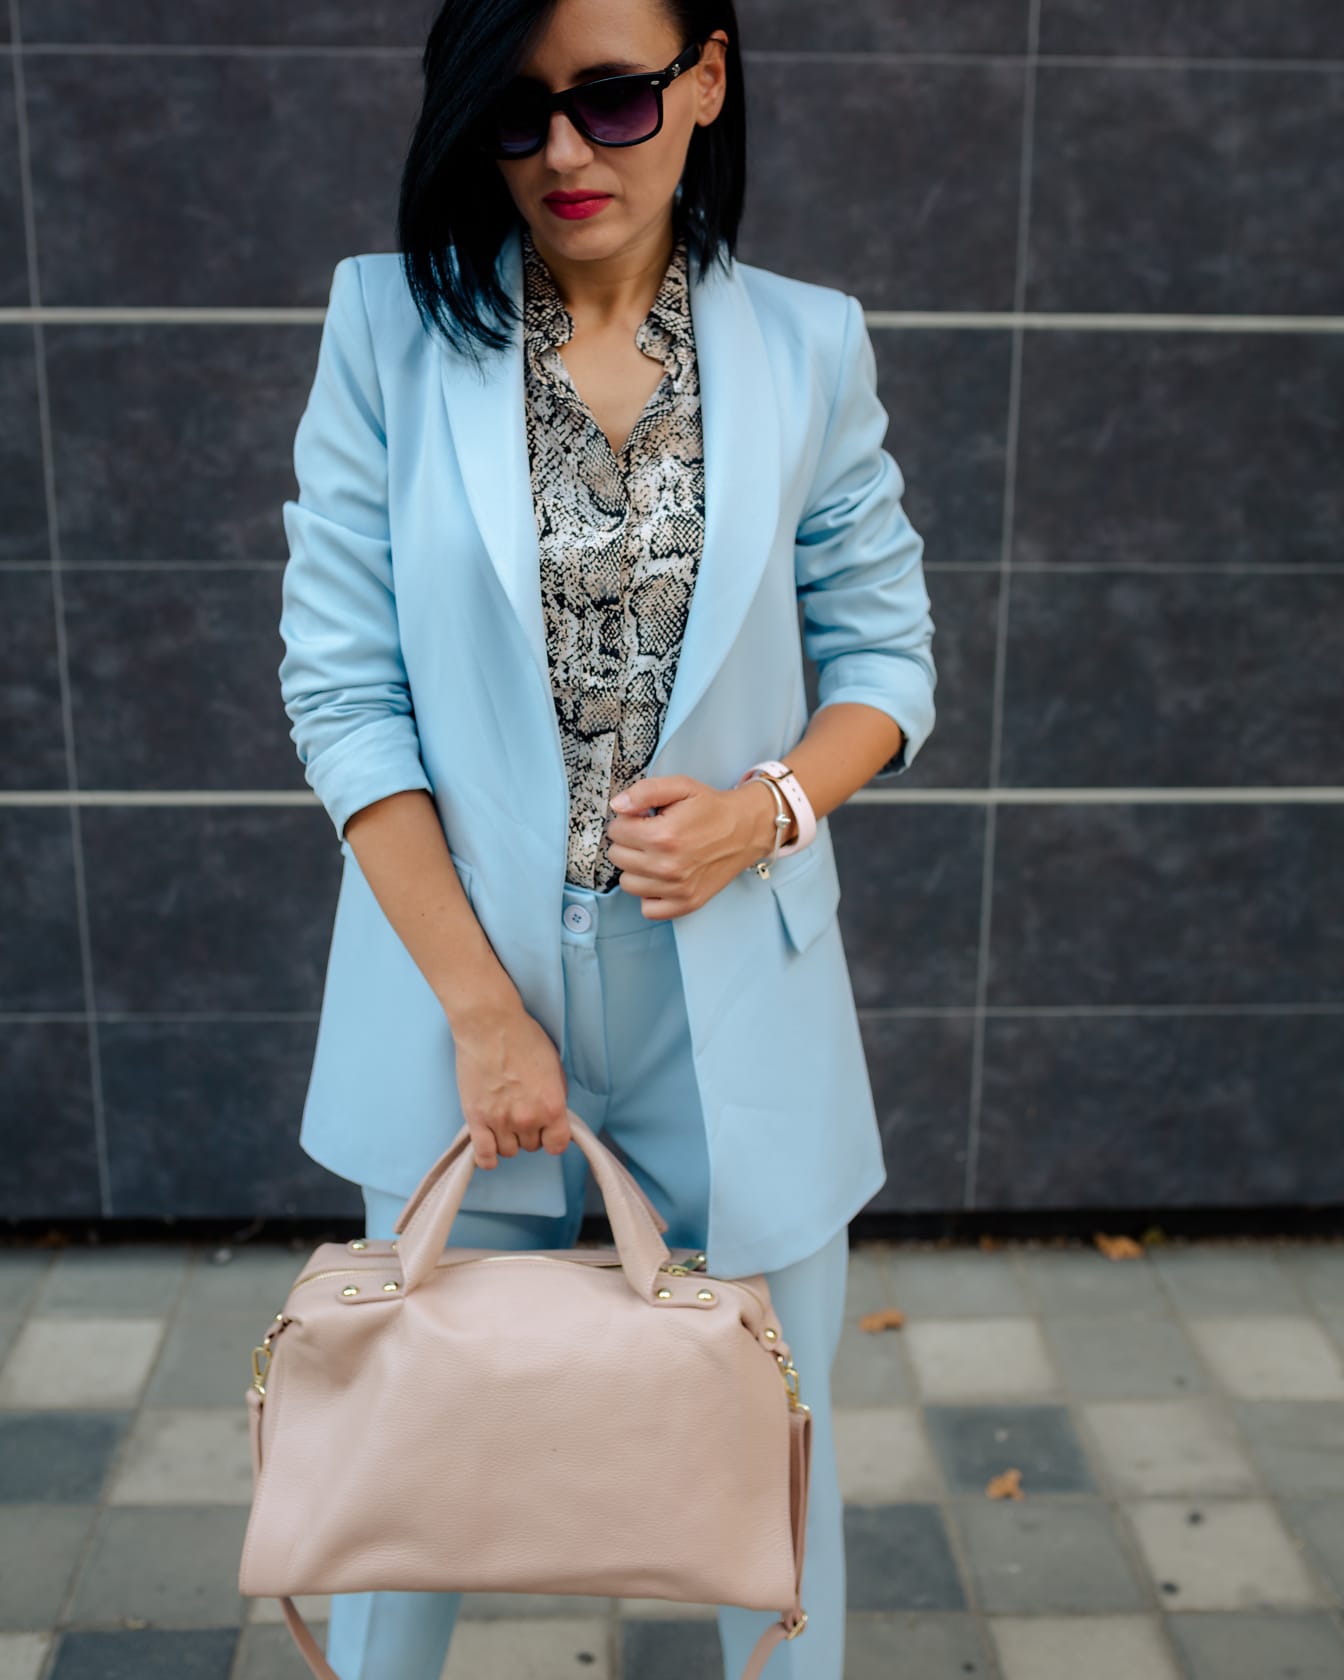 Một nữ doanh nhân trẻ mảnh khảnh trong quần xanh và một bộ đồ công sở cầm một chiếc túi xách da màu be